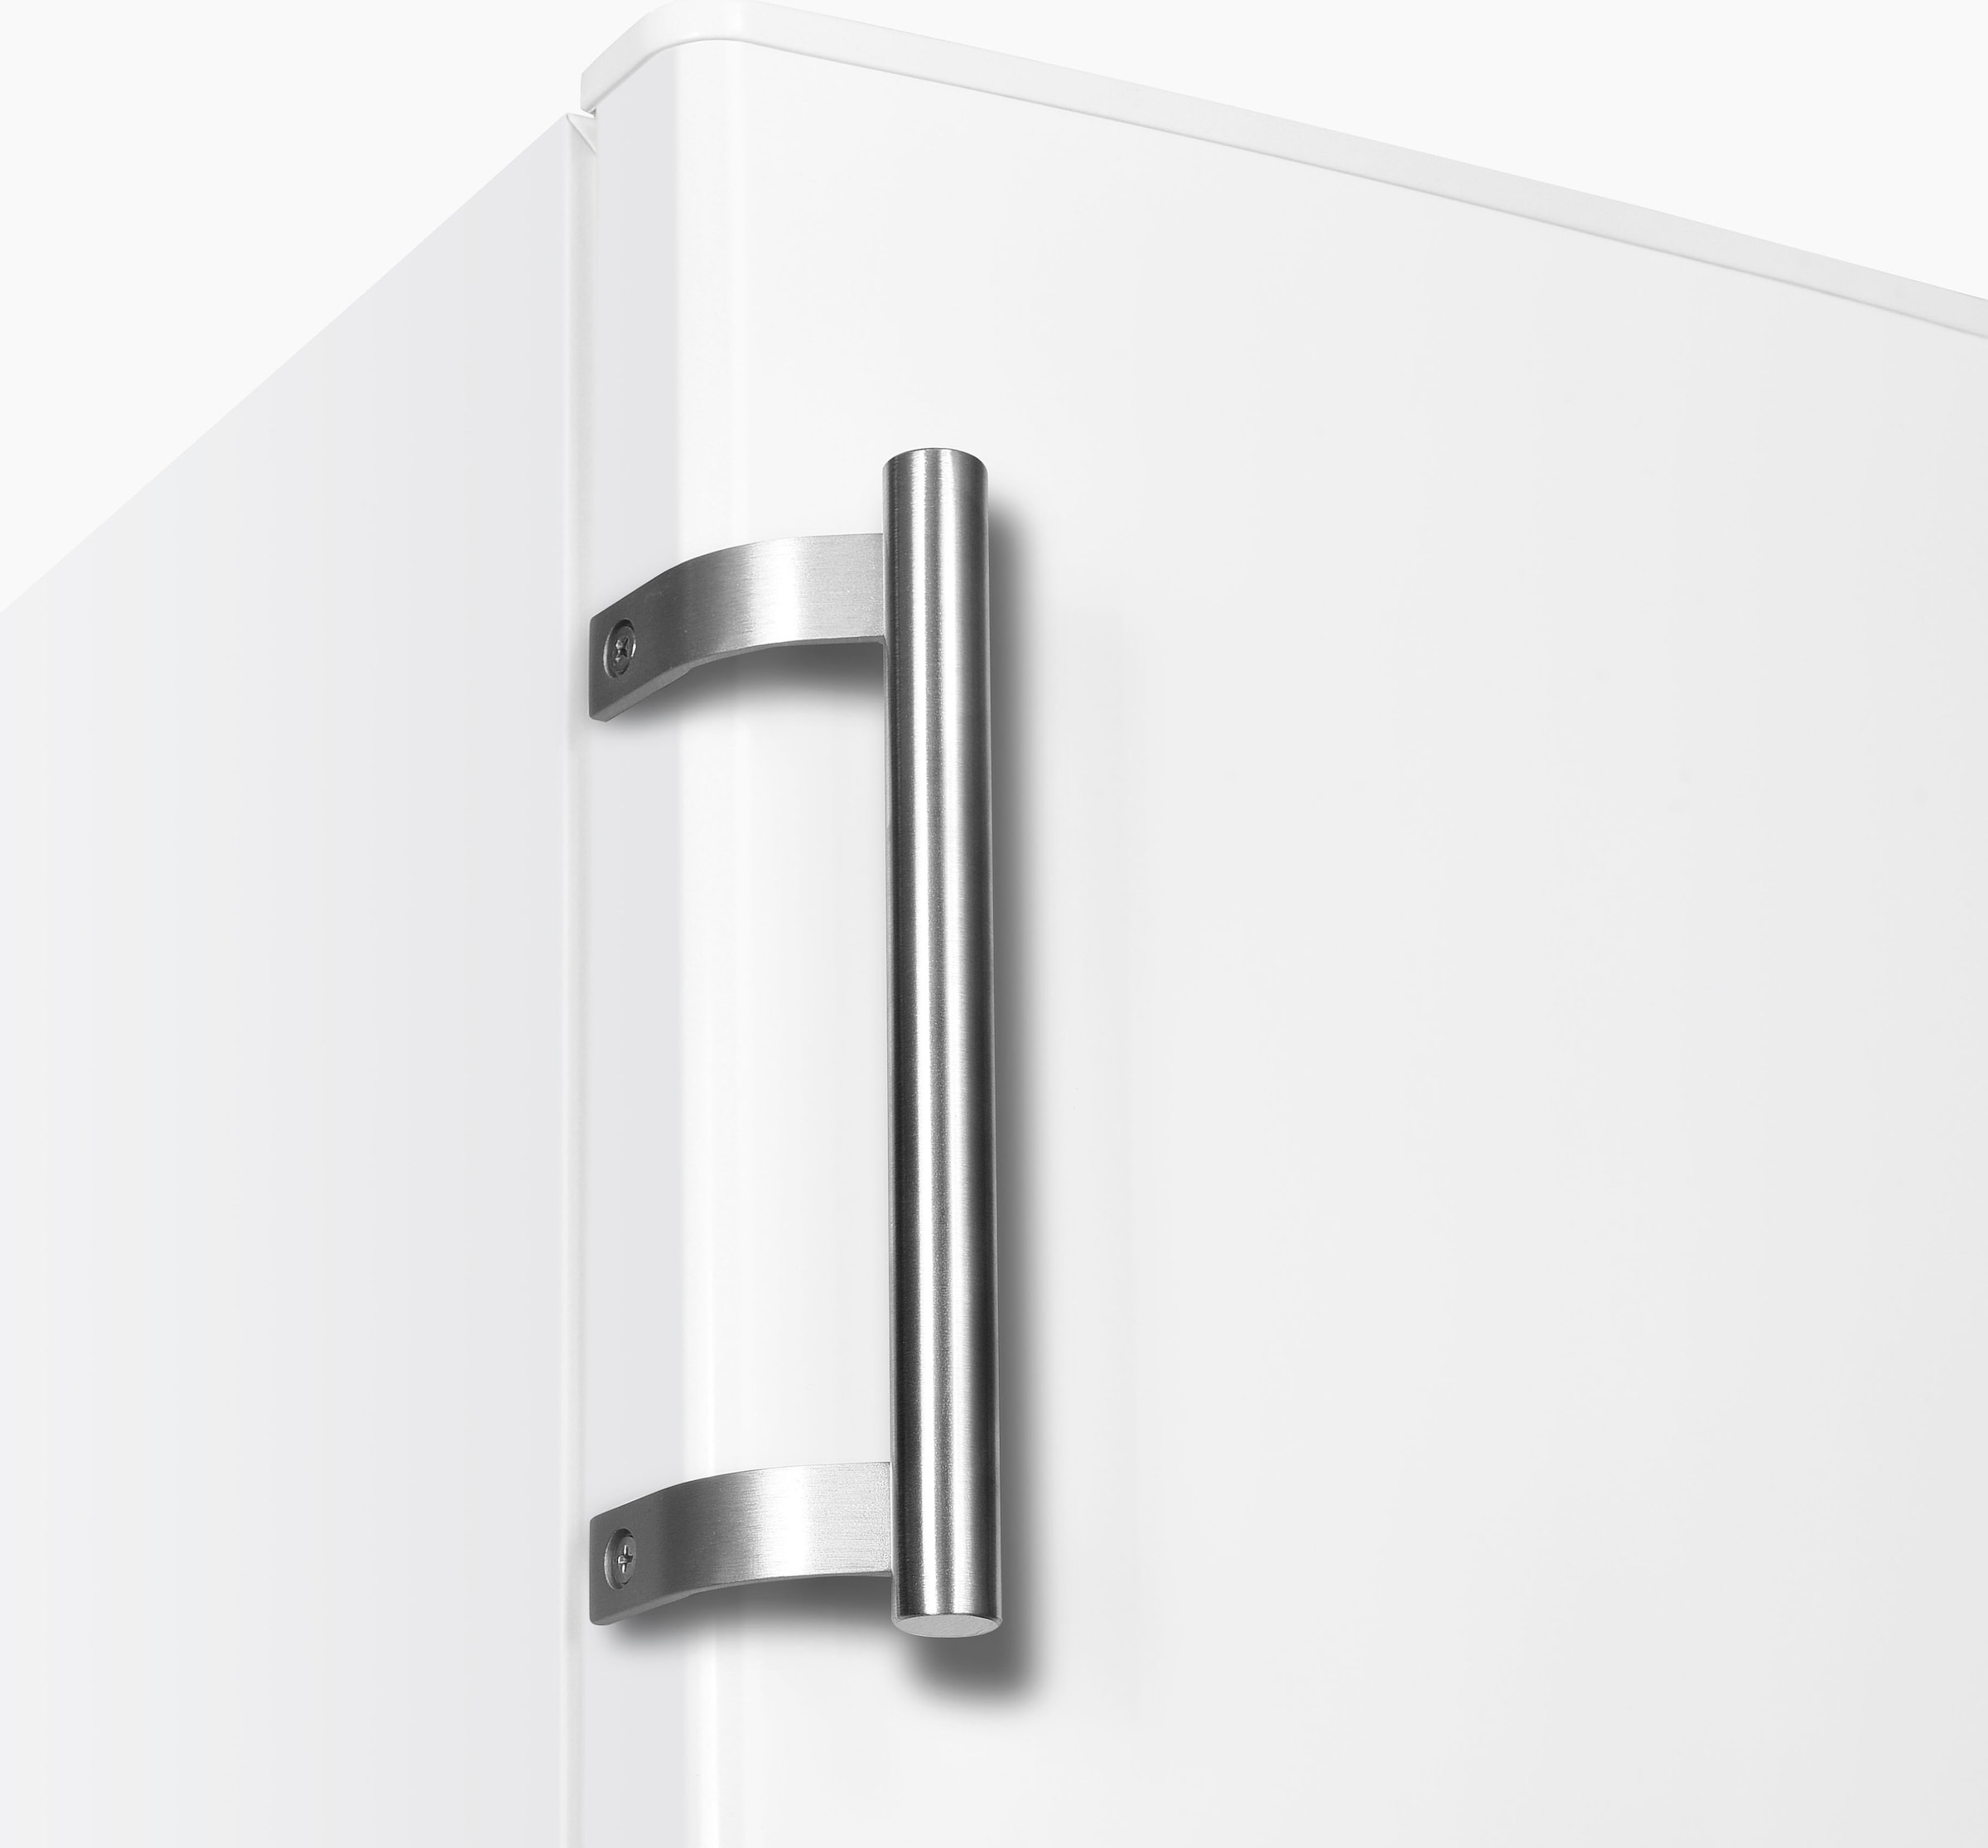 Hanseatic Kühlschrank, HKS14355EW, 142,6 cm hoch, 54,4 cm breit bestellen